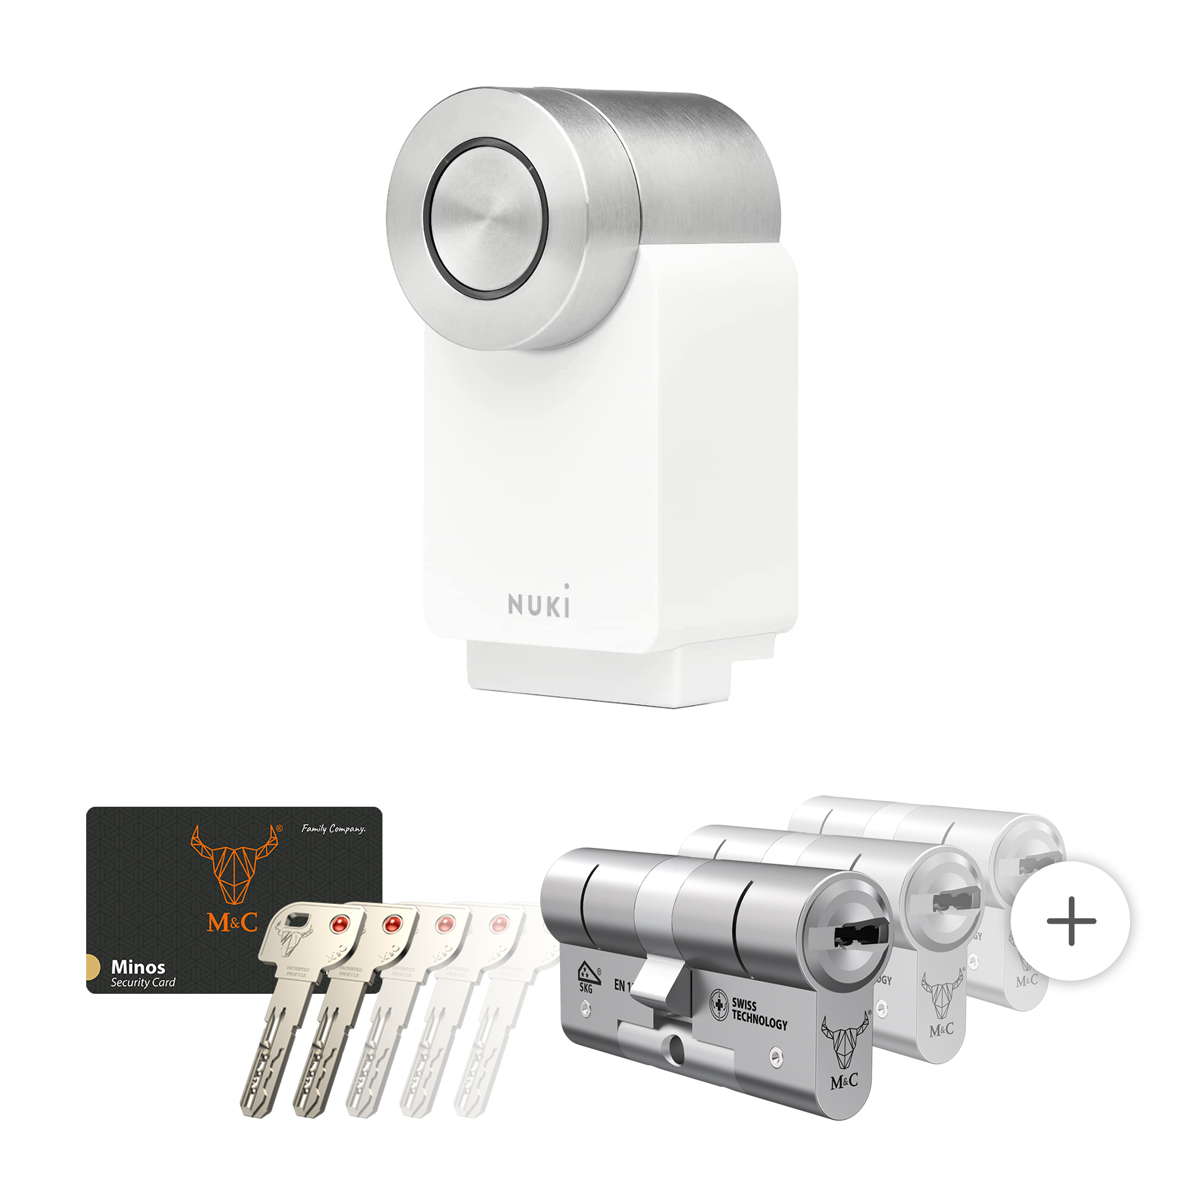 Nuki Smart Lock 4.0 Pro wit met cilinderslot M&C Minos kopen?